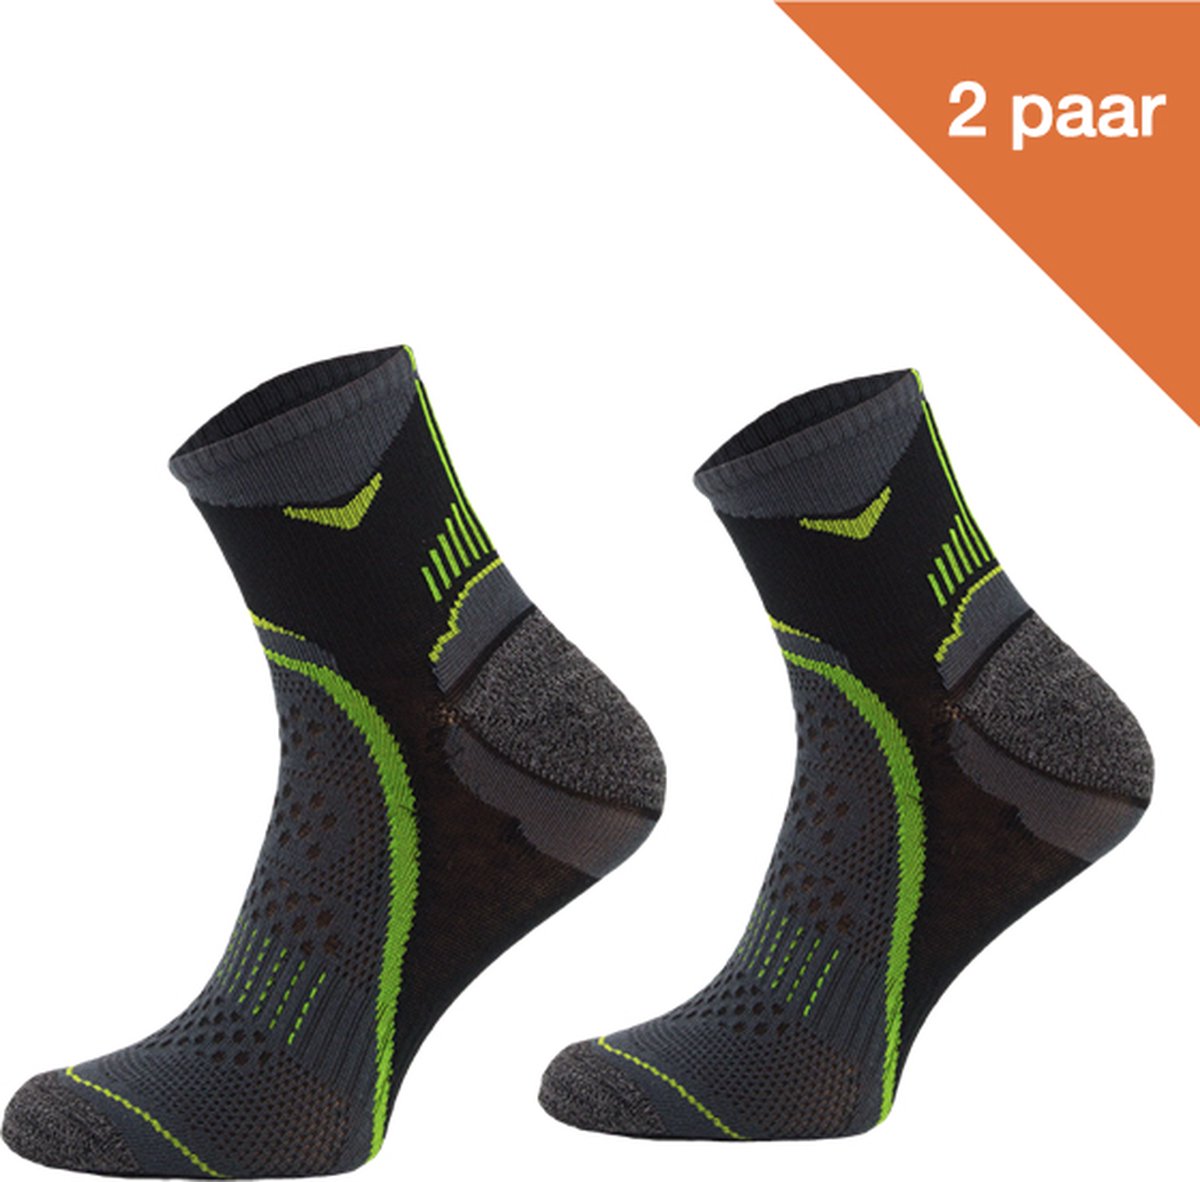 Comodo Hardloopsokken Polyester RUN2 - Zwart/Groen - 2 paar - Maat 39-42